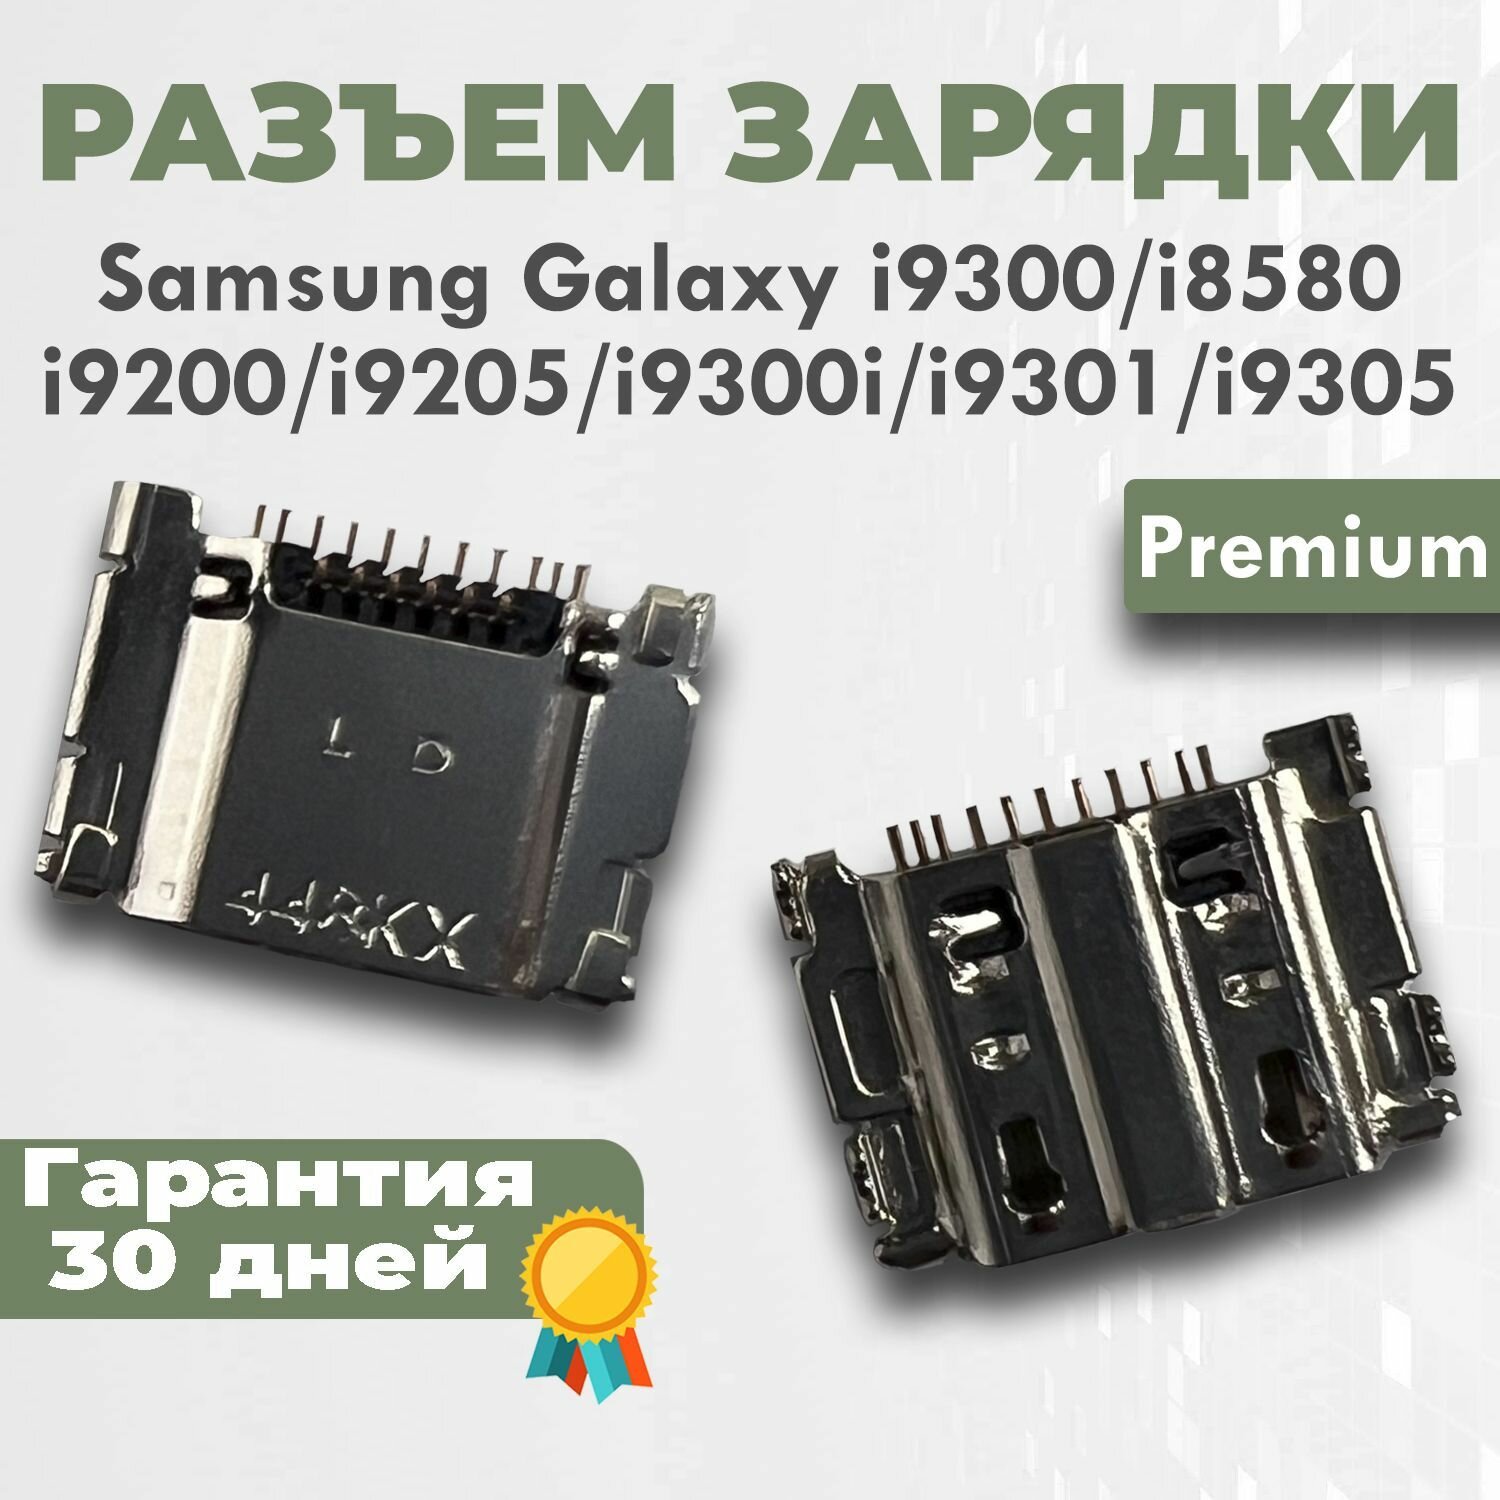 Разъем зарядки для Galaxy i9300 i8580 i9200 i9205 i9300i i9301 i9305 Premium